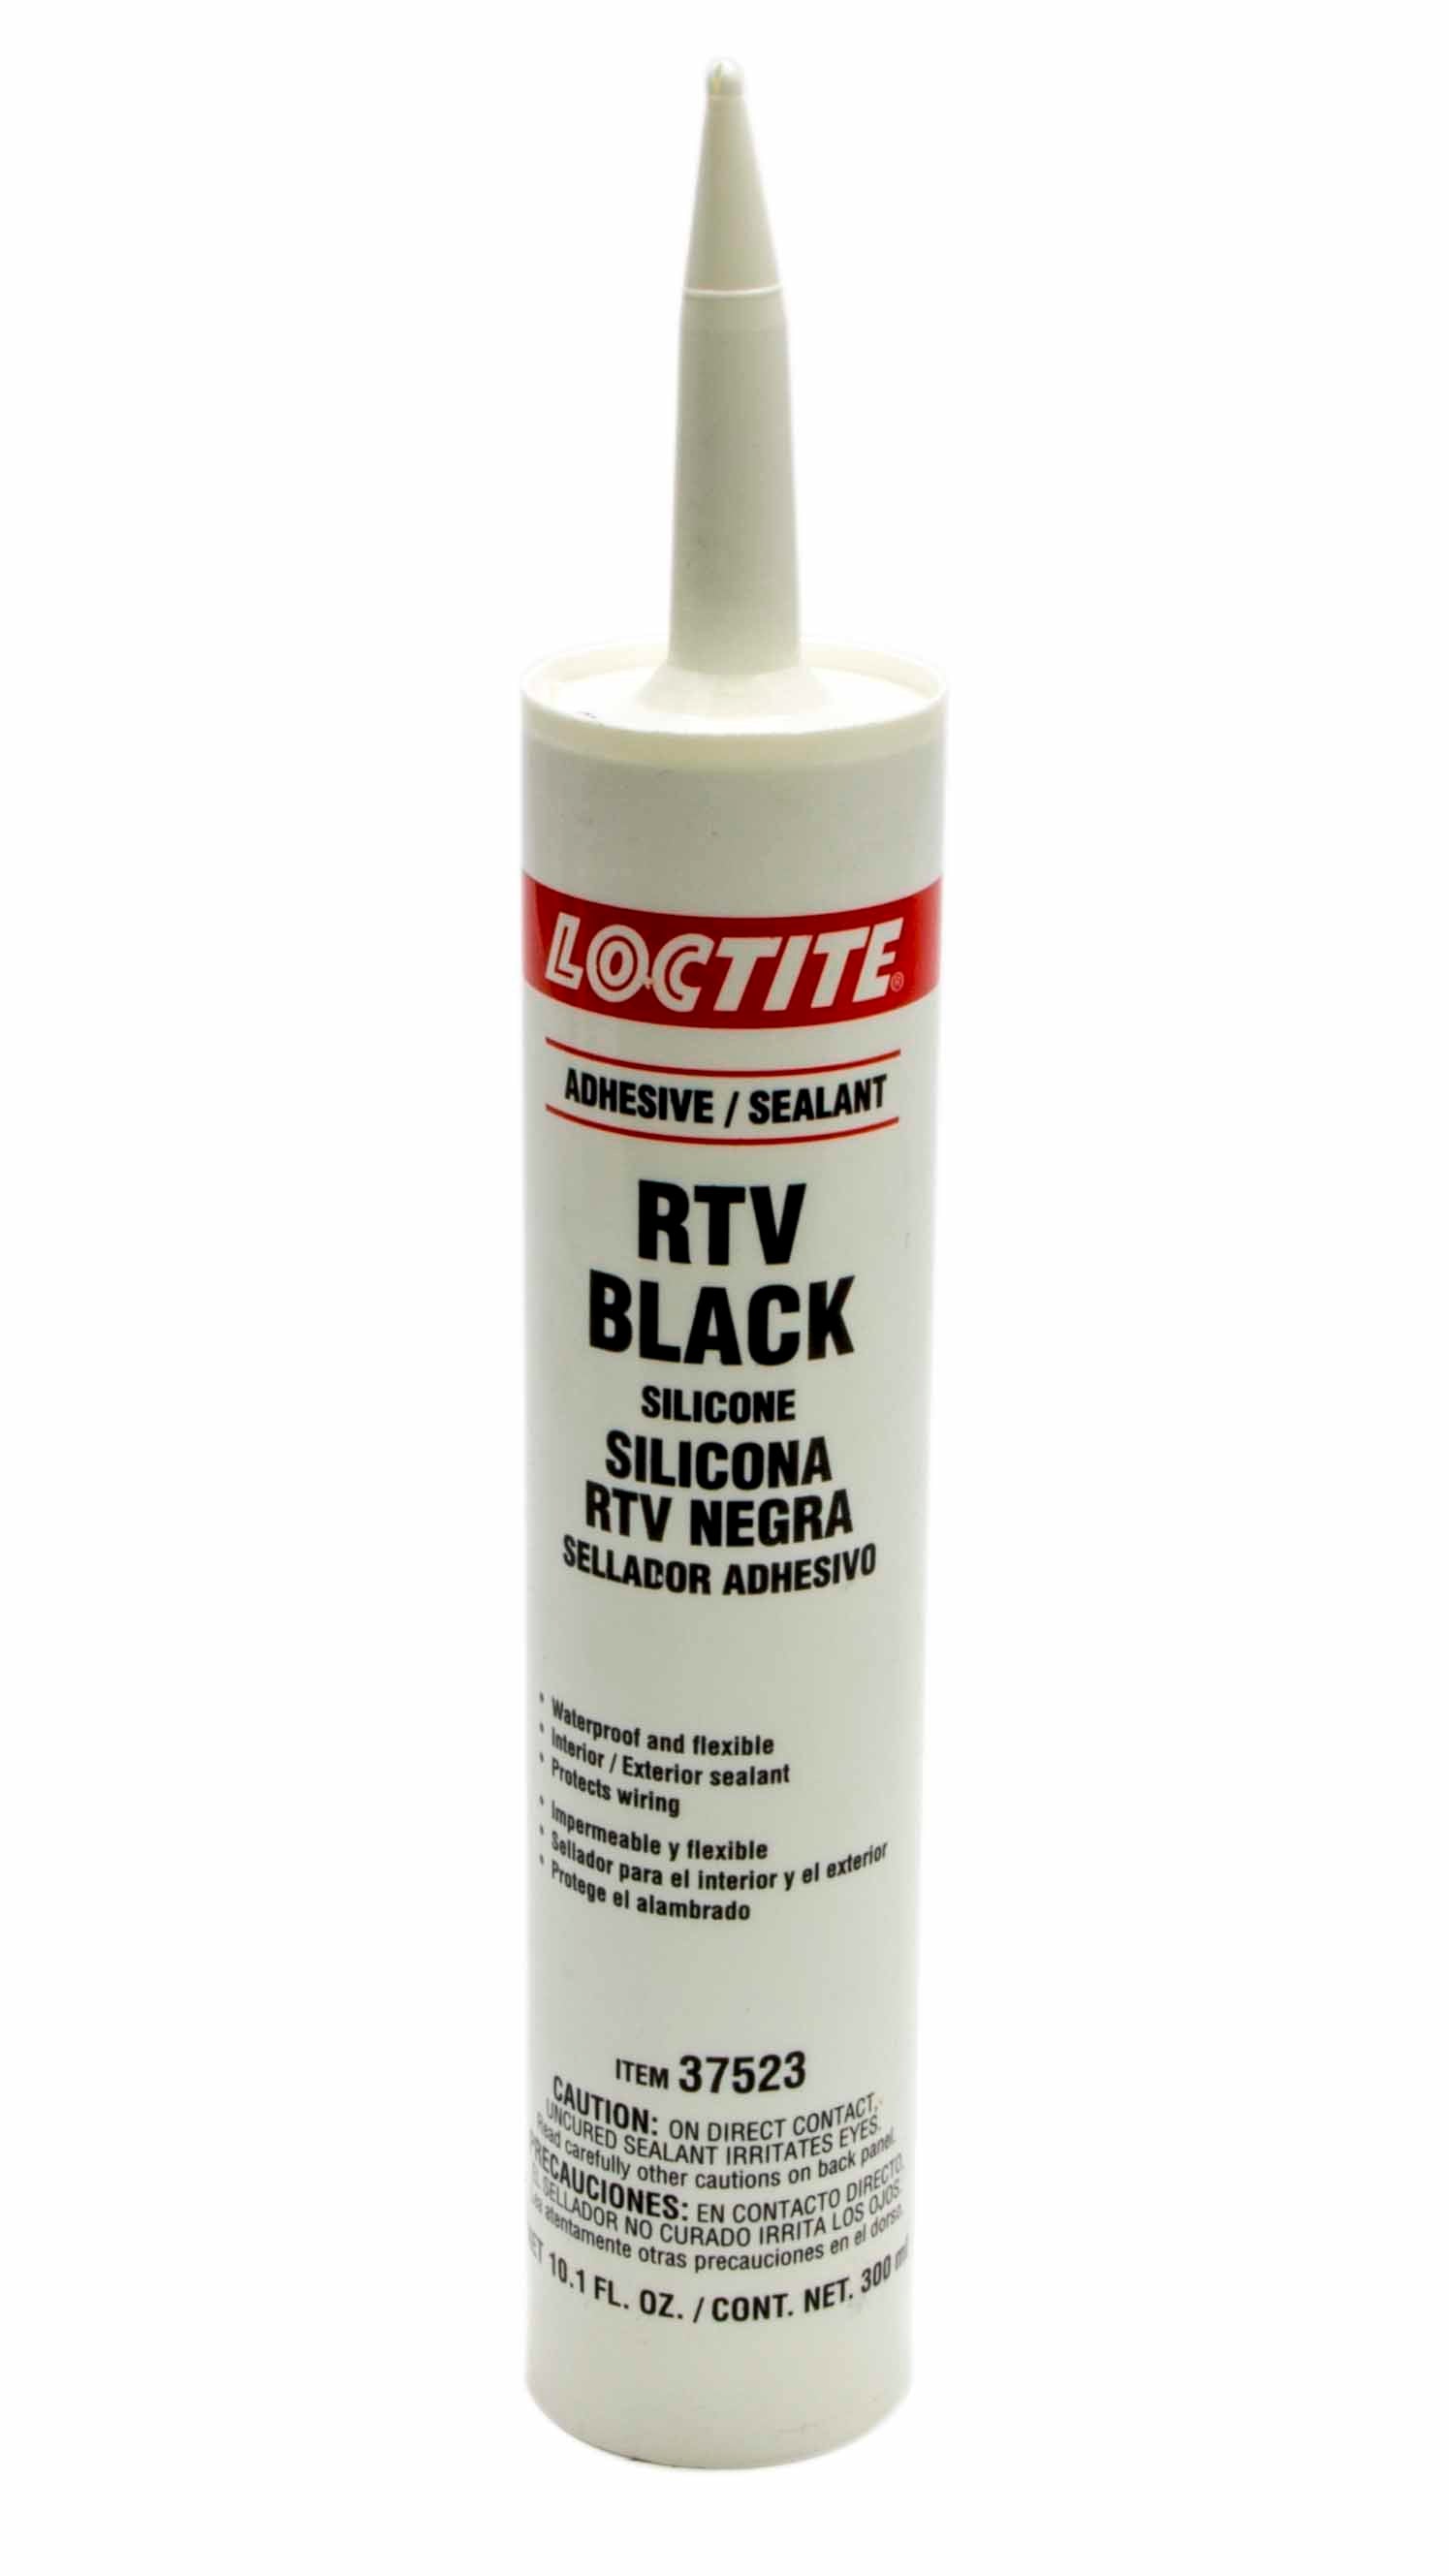 Loctite RTV Black Silicone Adhesive Cartridge 300ml LOC495315